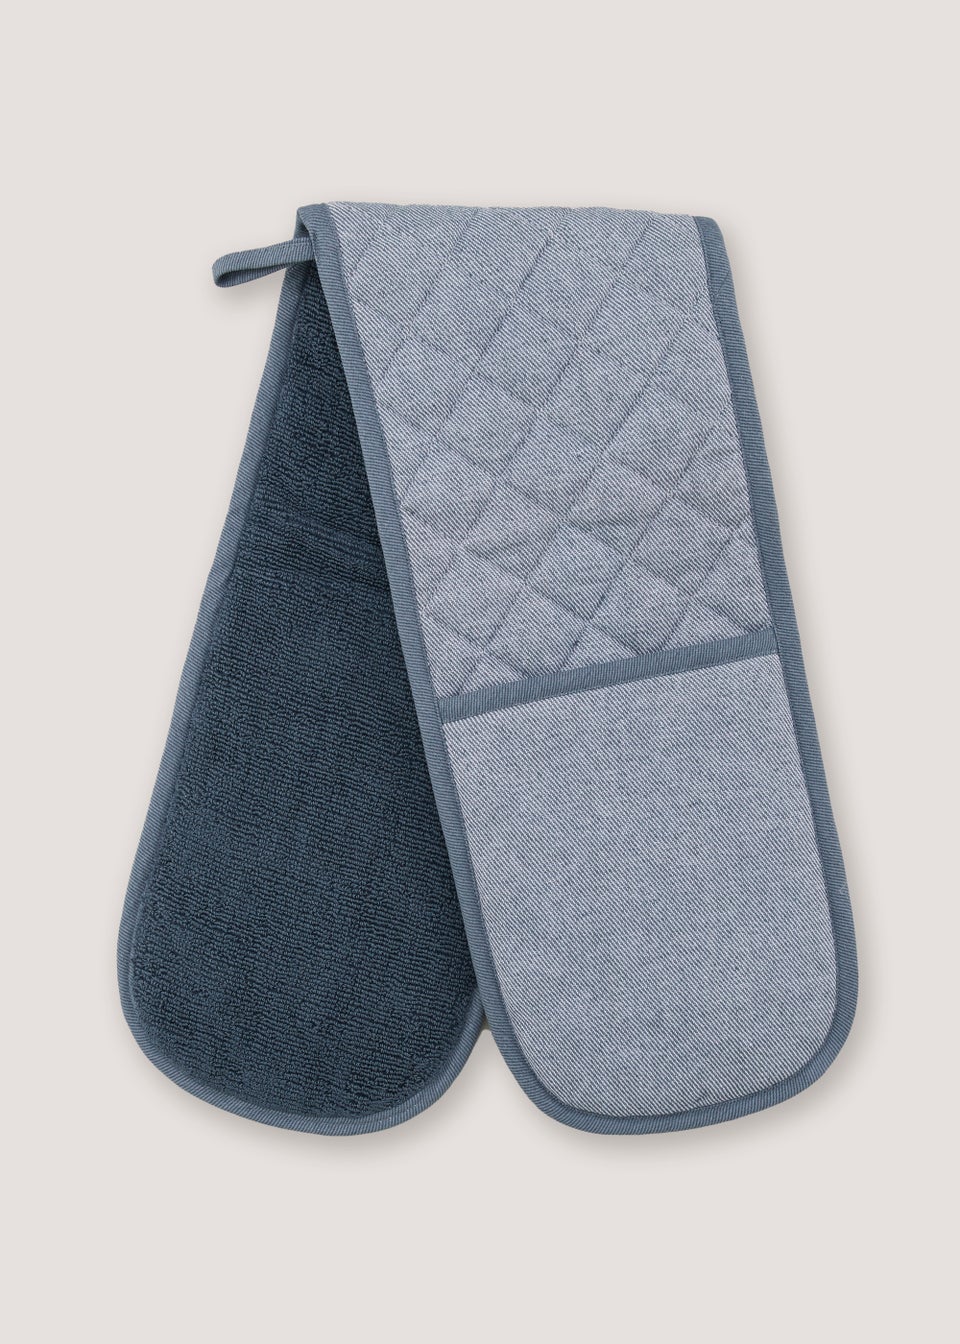 Blue Pro Textiles Oven Gloves (91.5cm x 19cm)